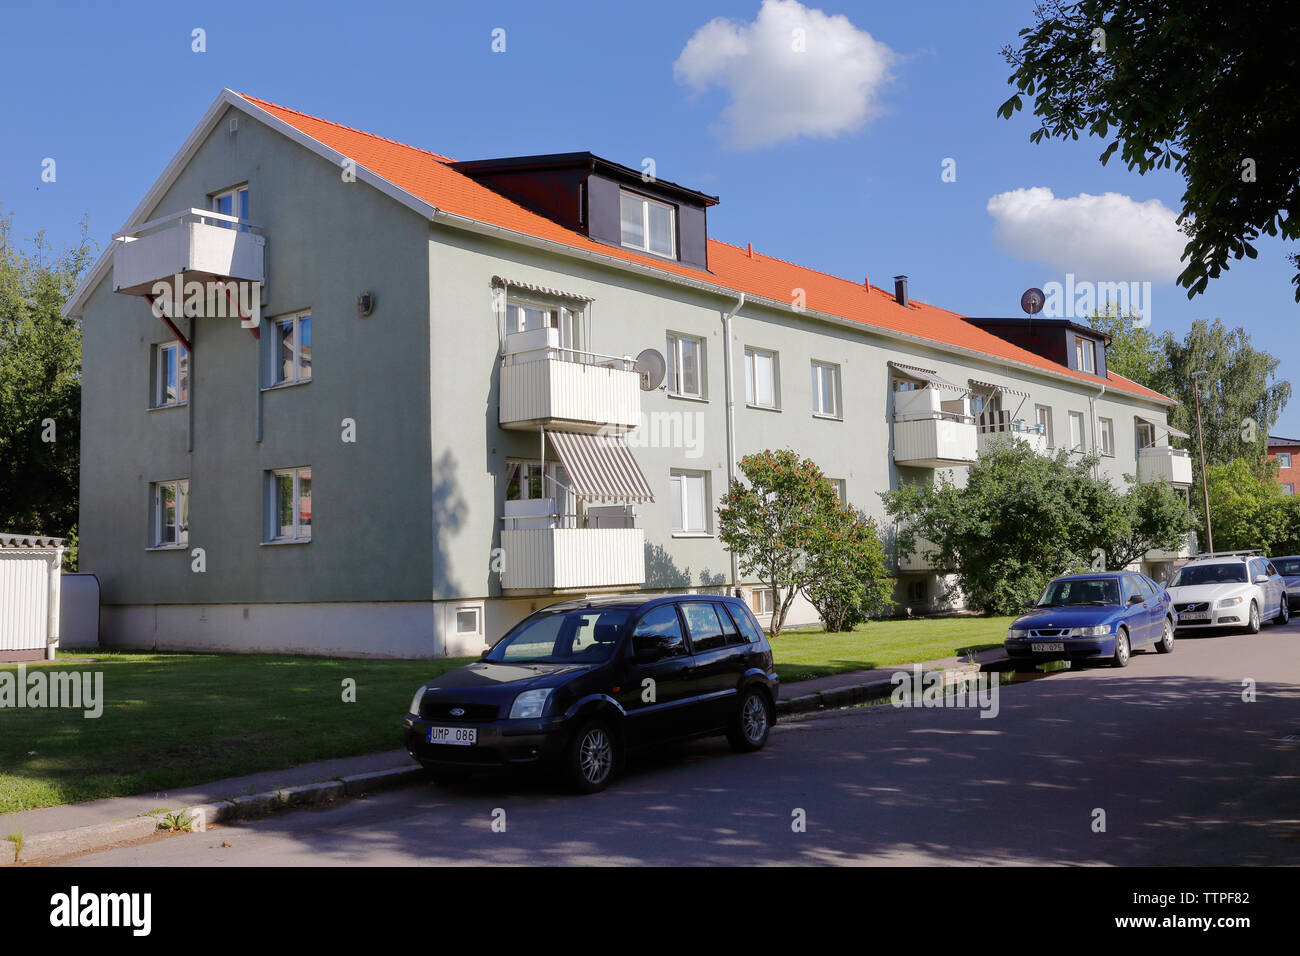 Hallstahammar, Schweden - 14. Juni 2019: Außenansicht des HSB Eigentumswohnung Gebäude errichtet 1960 an 16 Tradgardsgatan Straße. Stockfoto